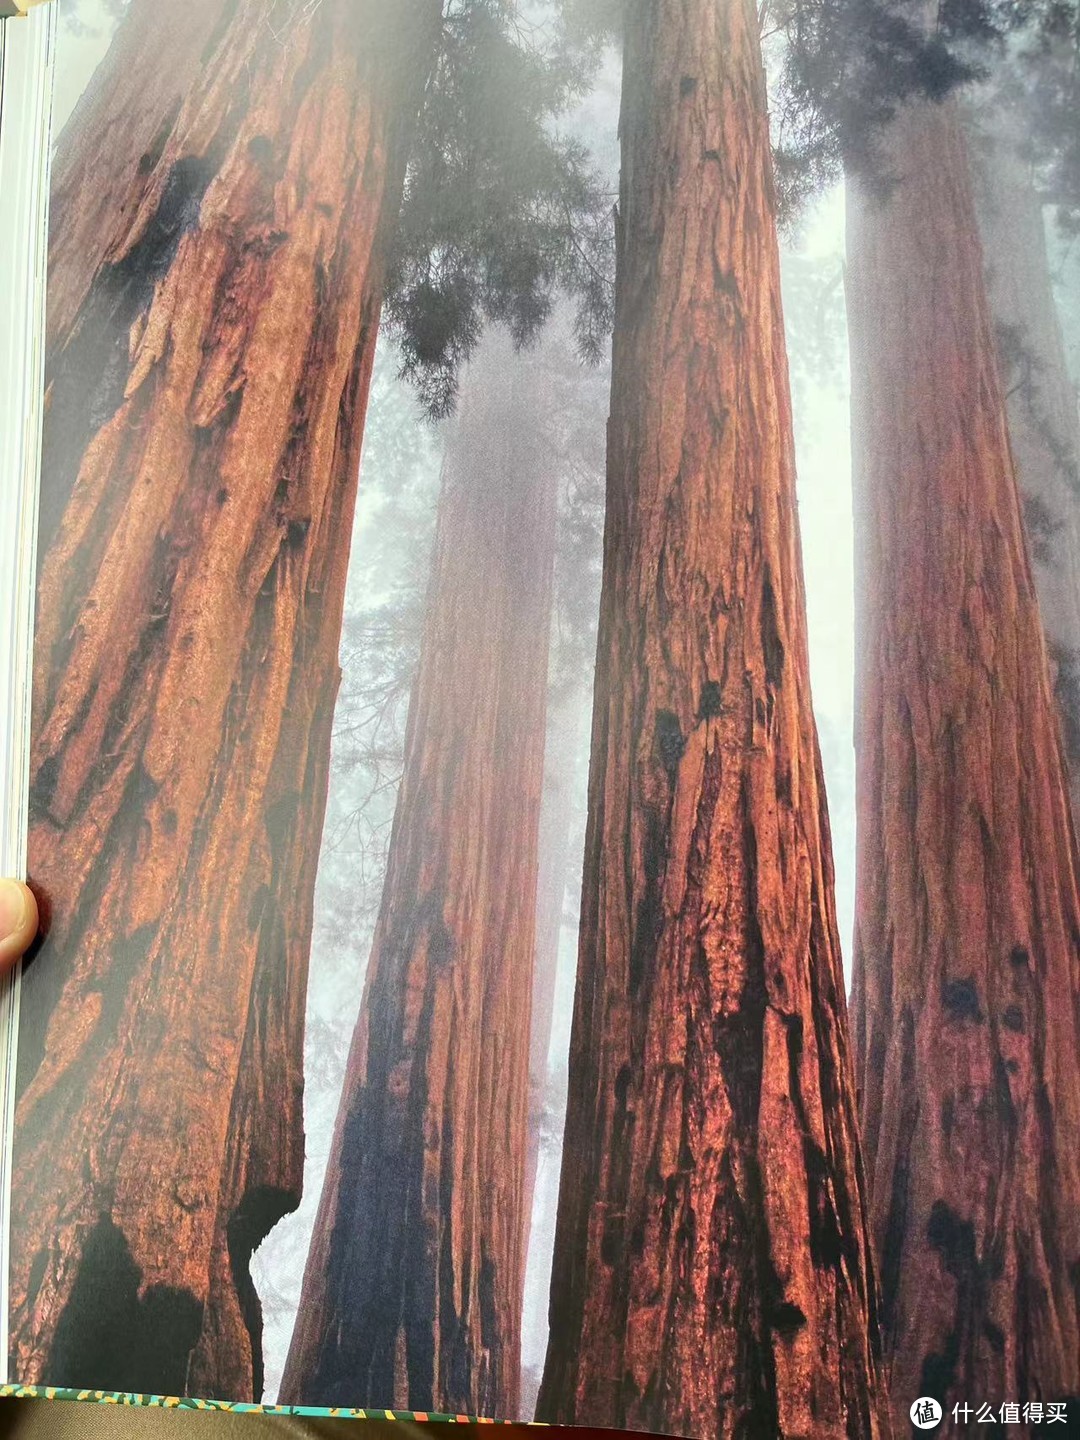 “一旦见过北美红杉，它就会在你的心中留下印记。。。。。。伴你余生，挥之不去”